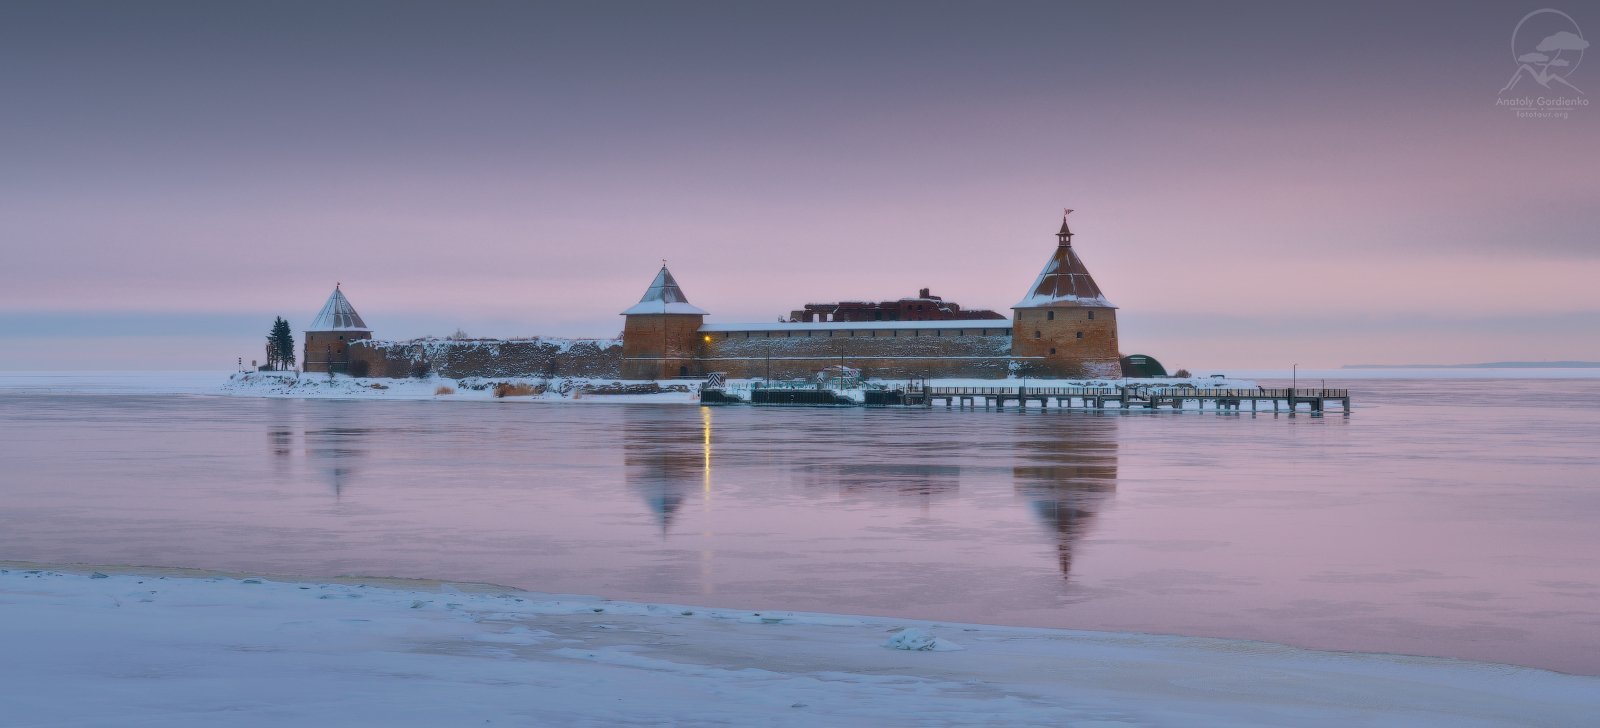 Крепость орешек Шлиссельбургская крепость зимой